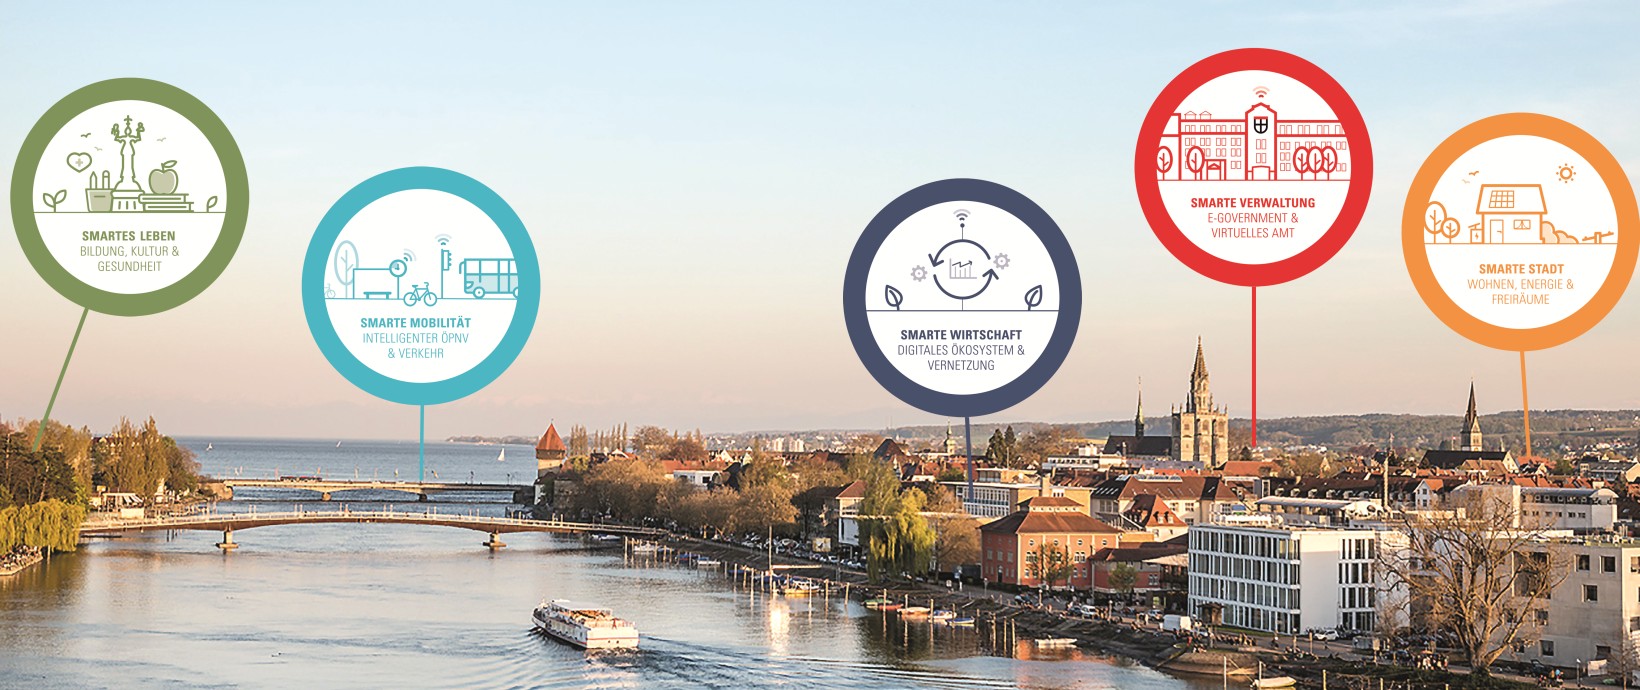 Stadt Konstanz mit einer Graphik der vier Handlungsfelder: Smarte Verwaltung, Smartes Stadtleben, Smarte Stadtplanung, Smarte Mobilität, Smarte Wirtschaft